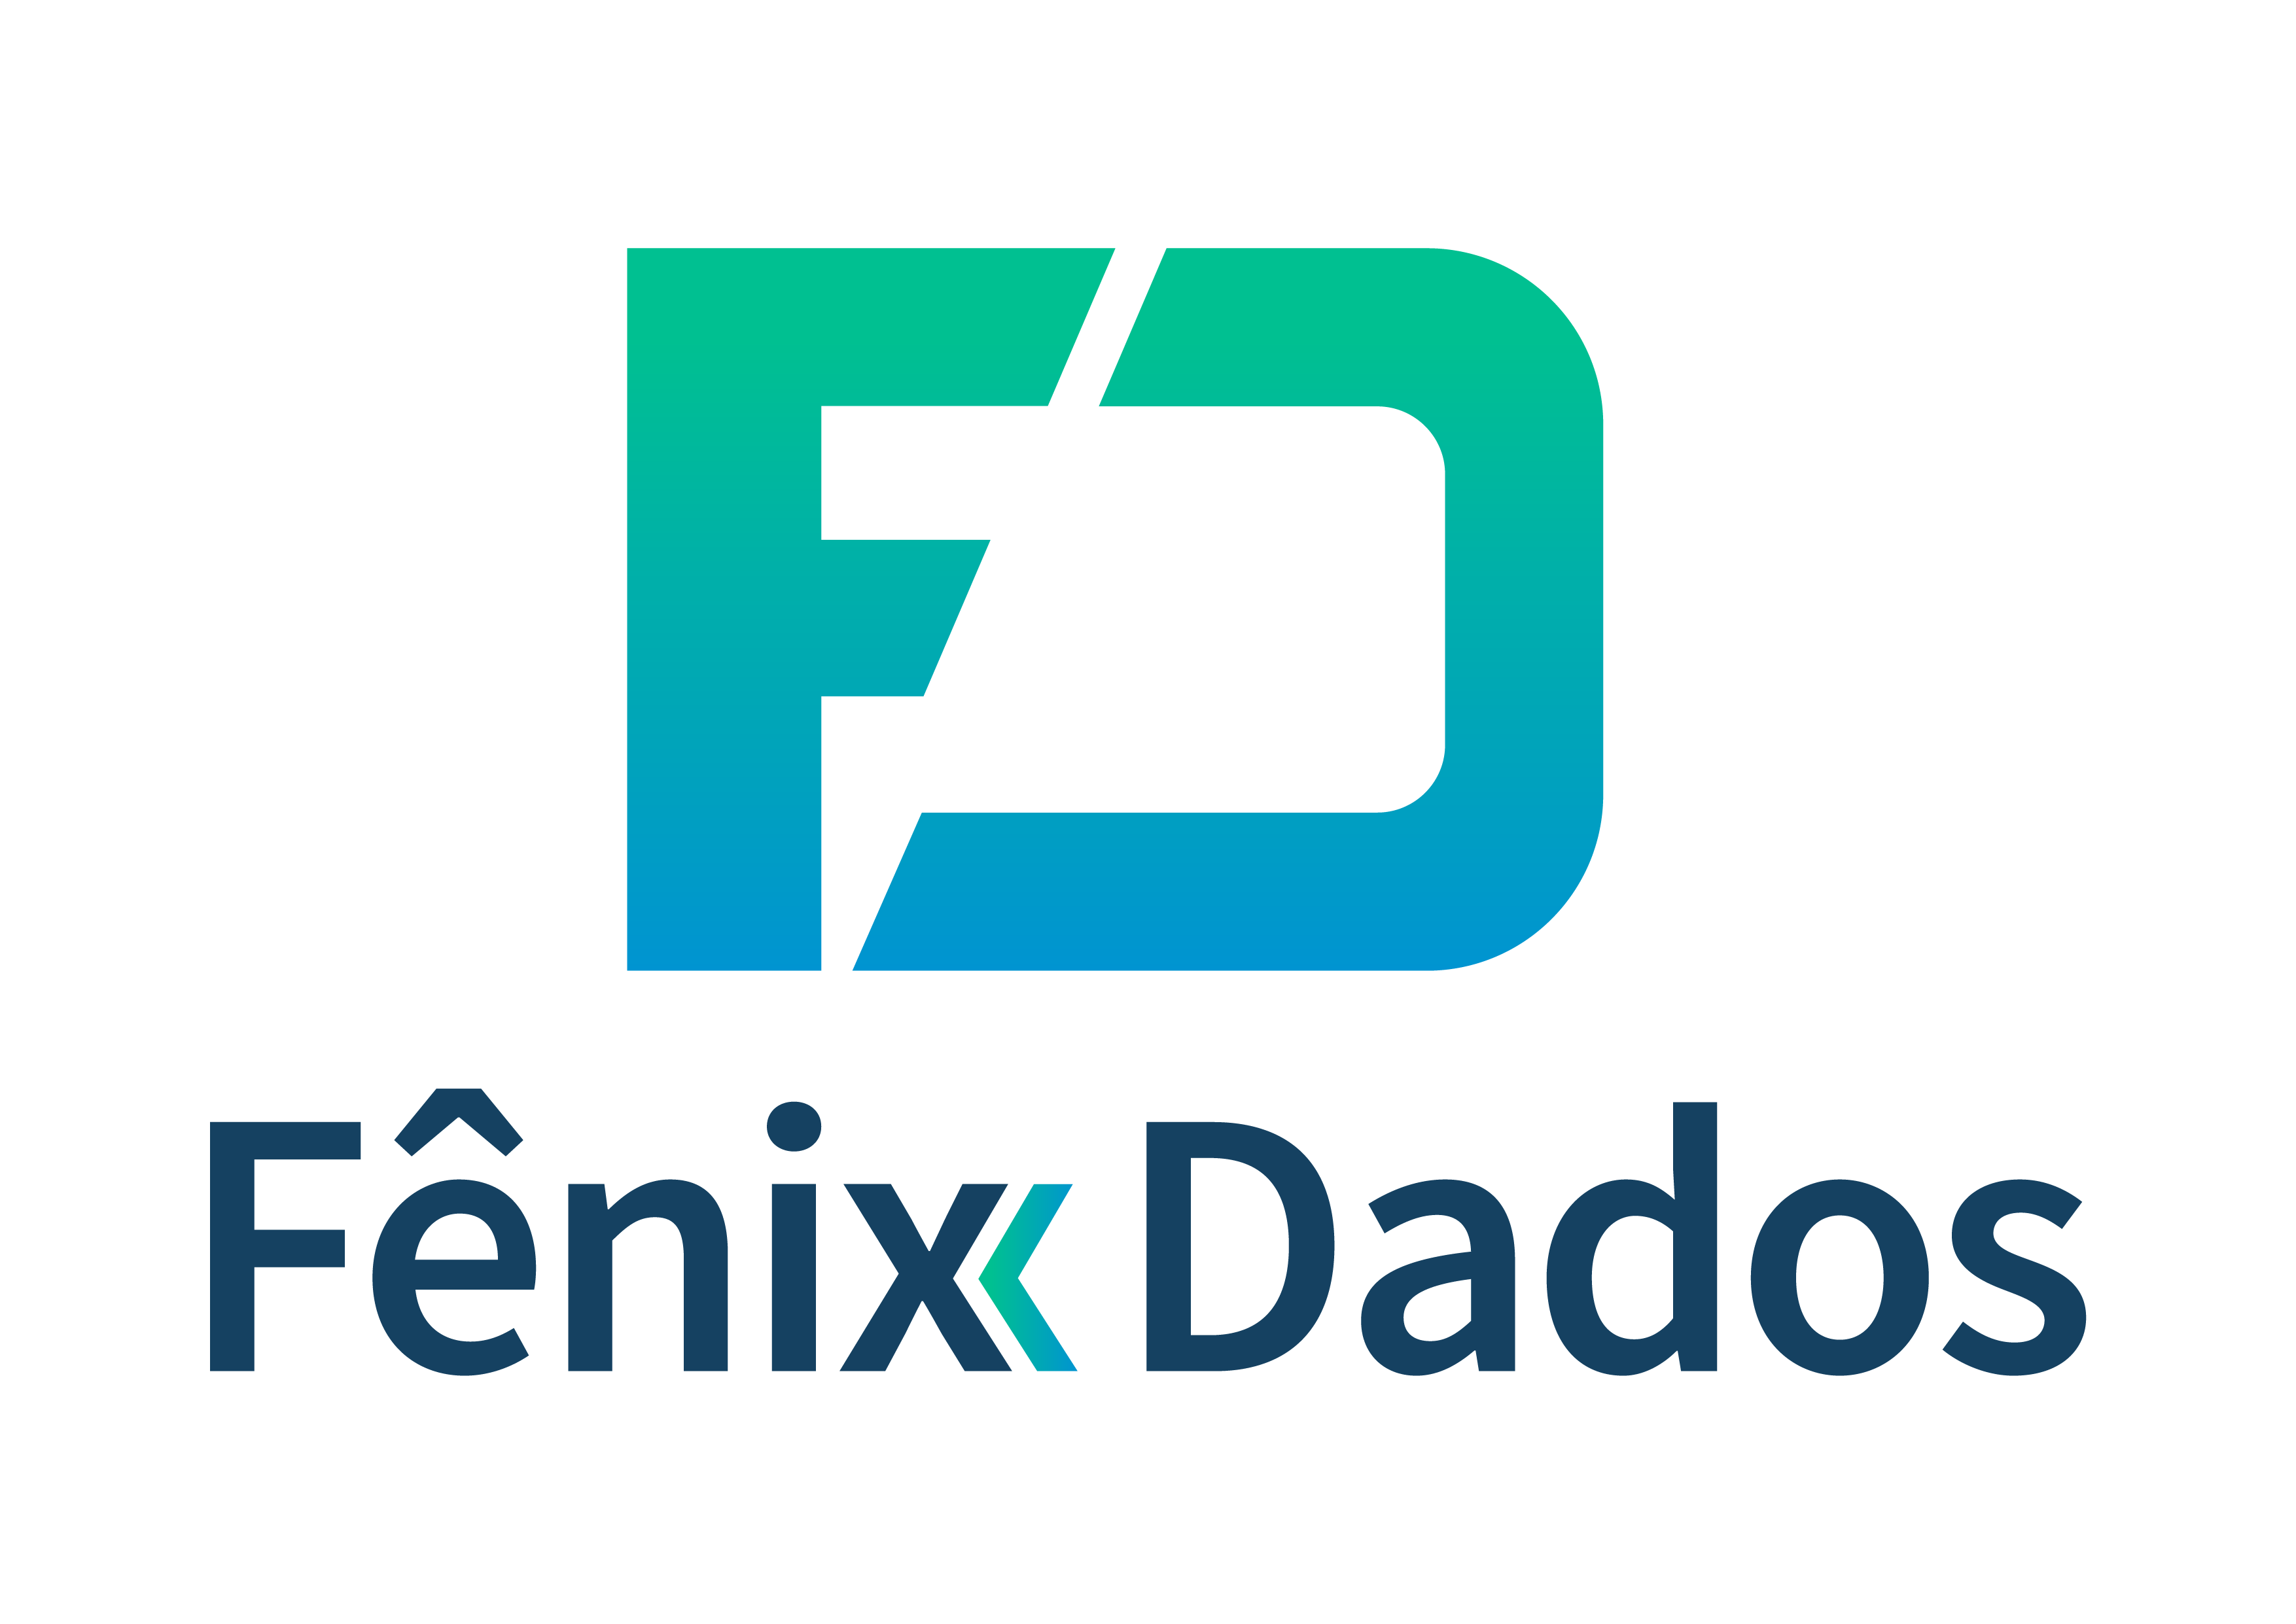 Fenix Dados